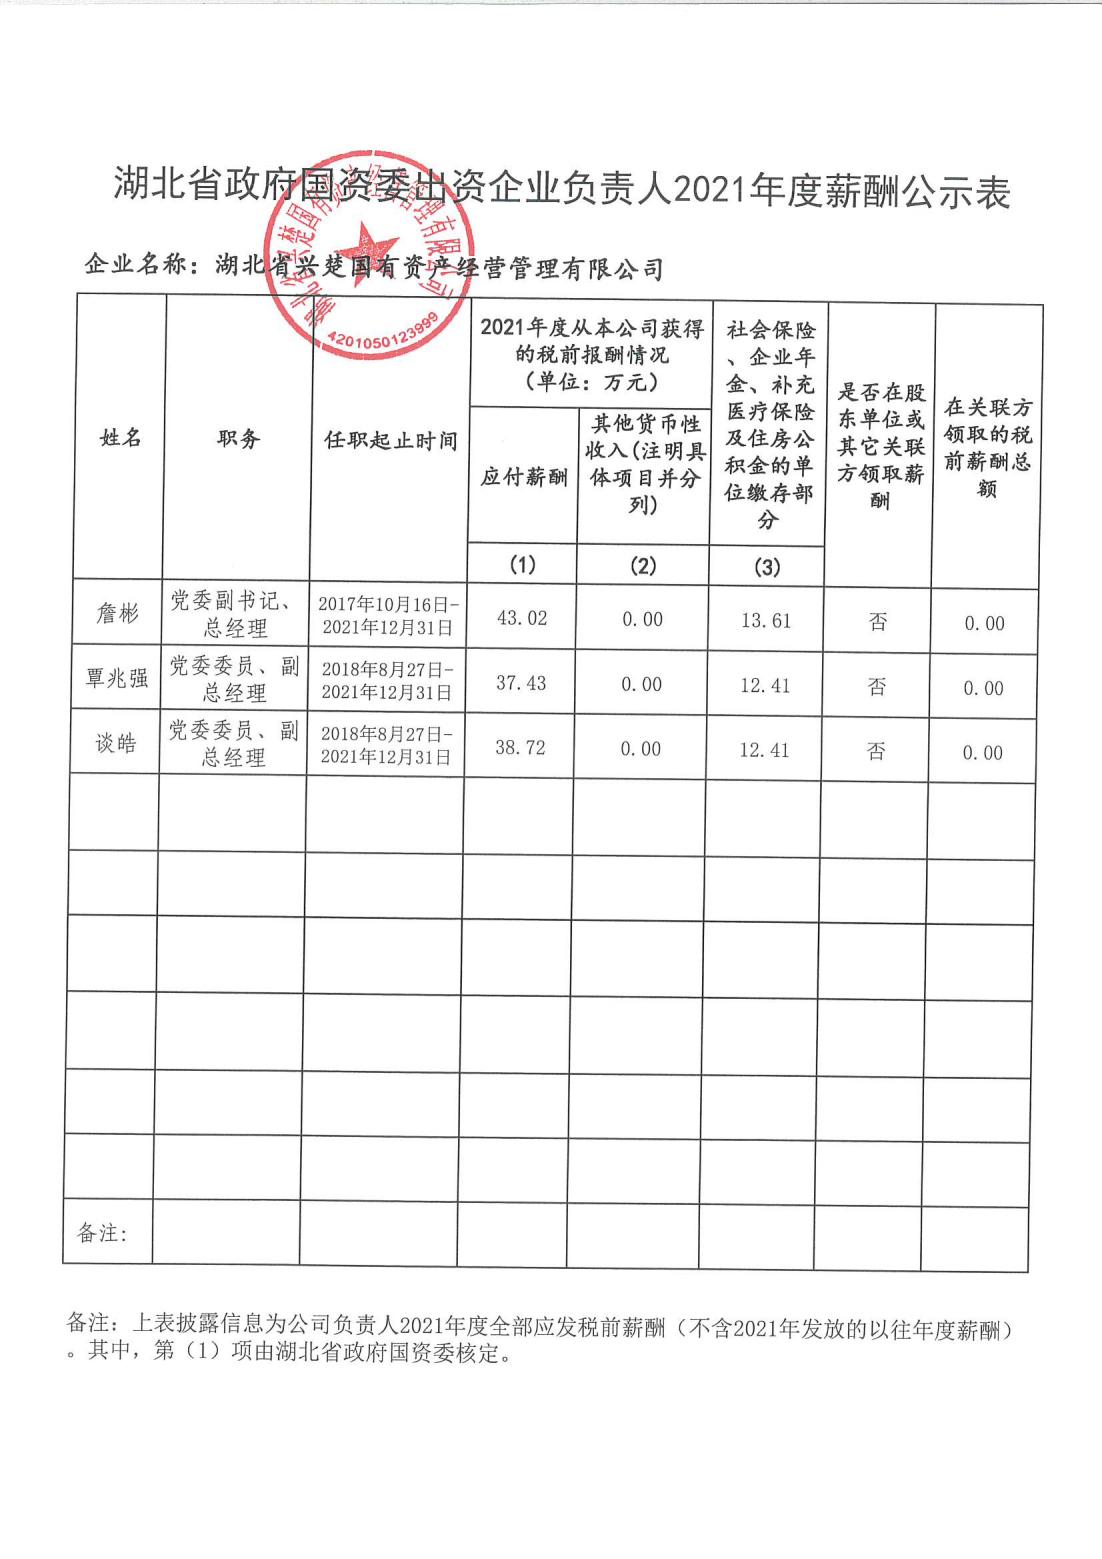 湖北省政府国资委出资企业负责人2021年度薪酬公示表.jpg